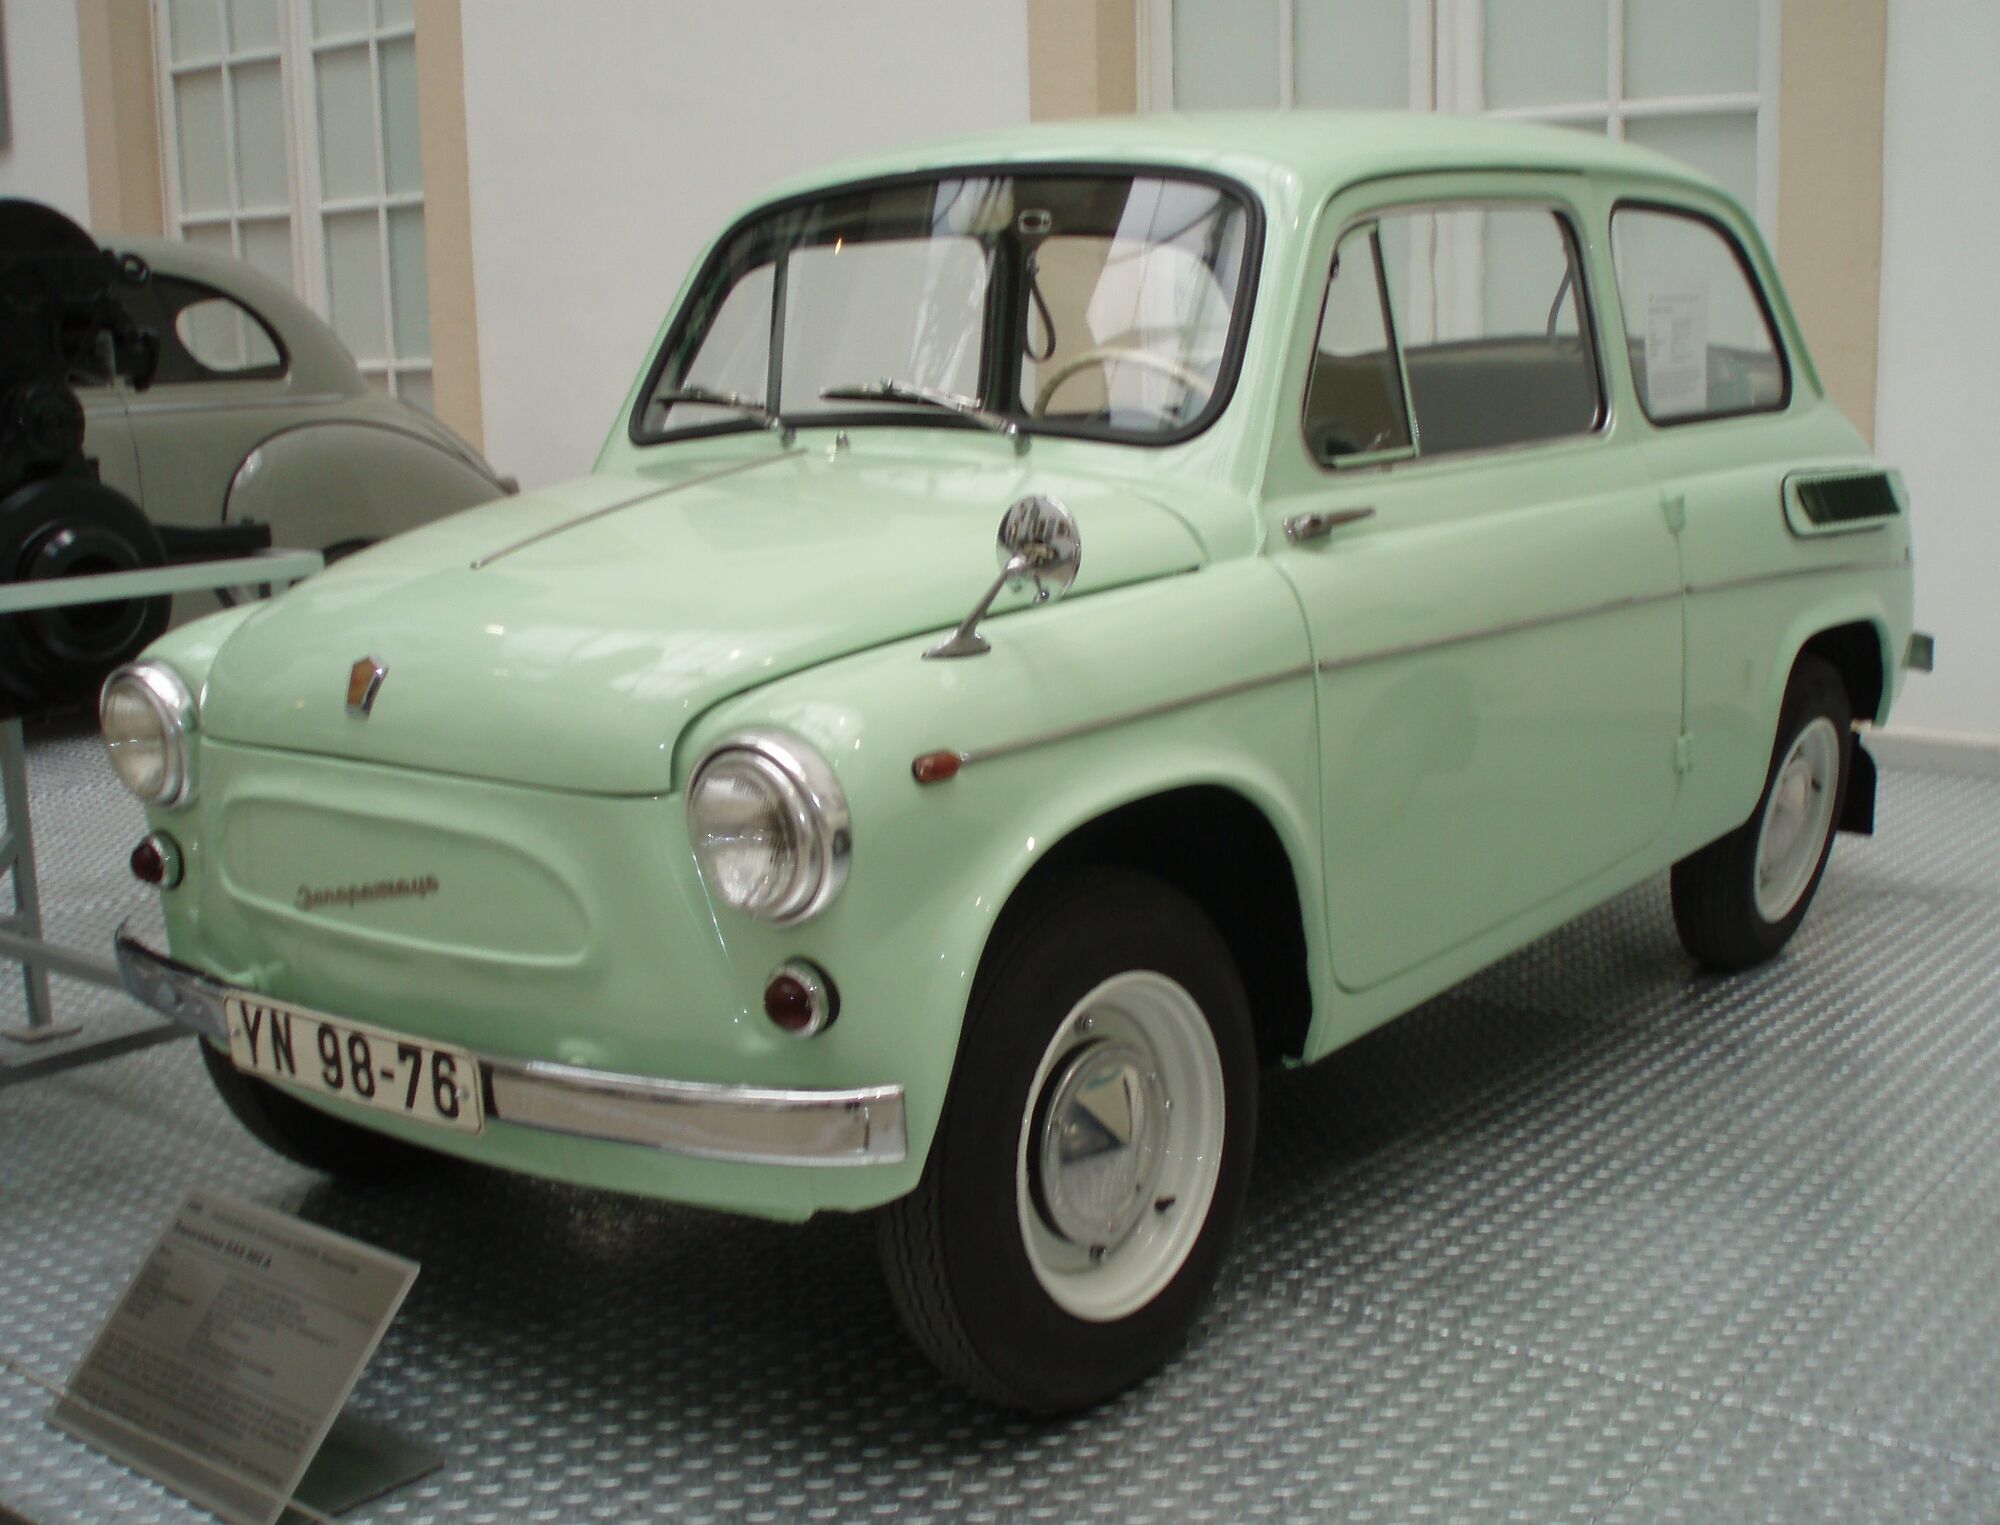 ЗАЗ-965, як і інші радянські авто, цінують емігранти